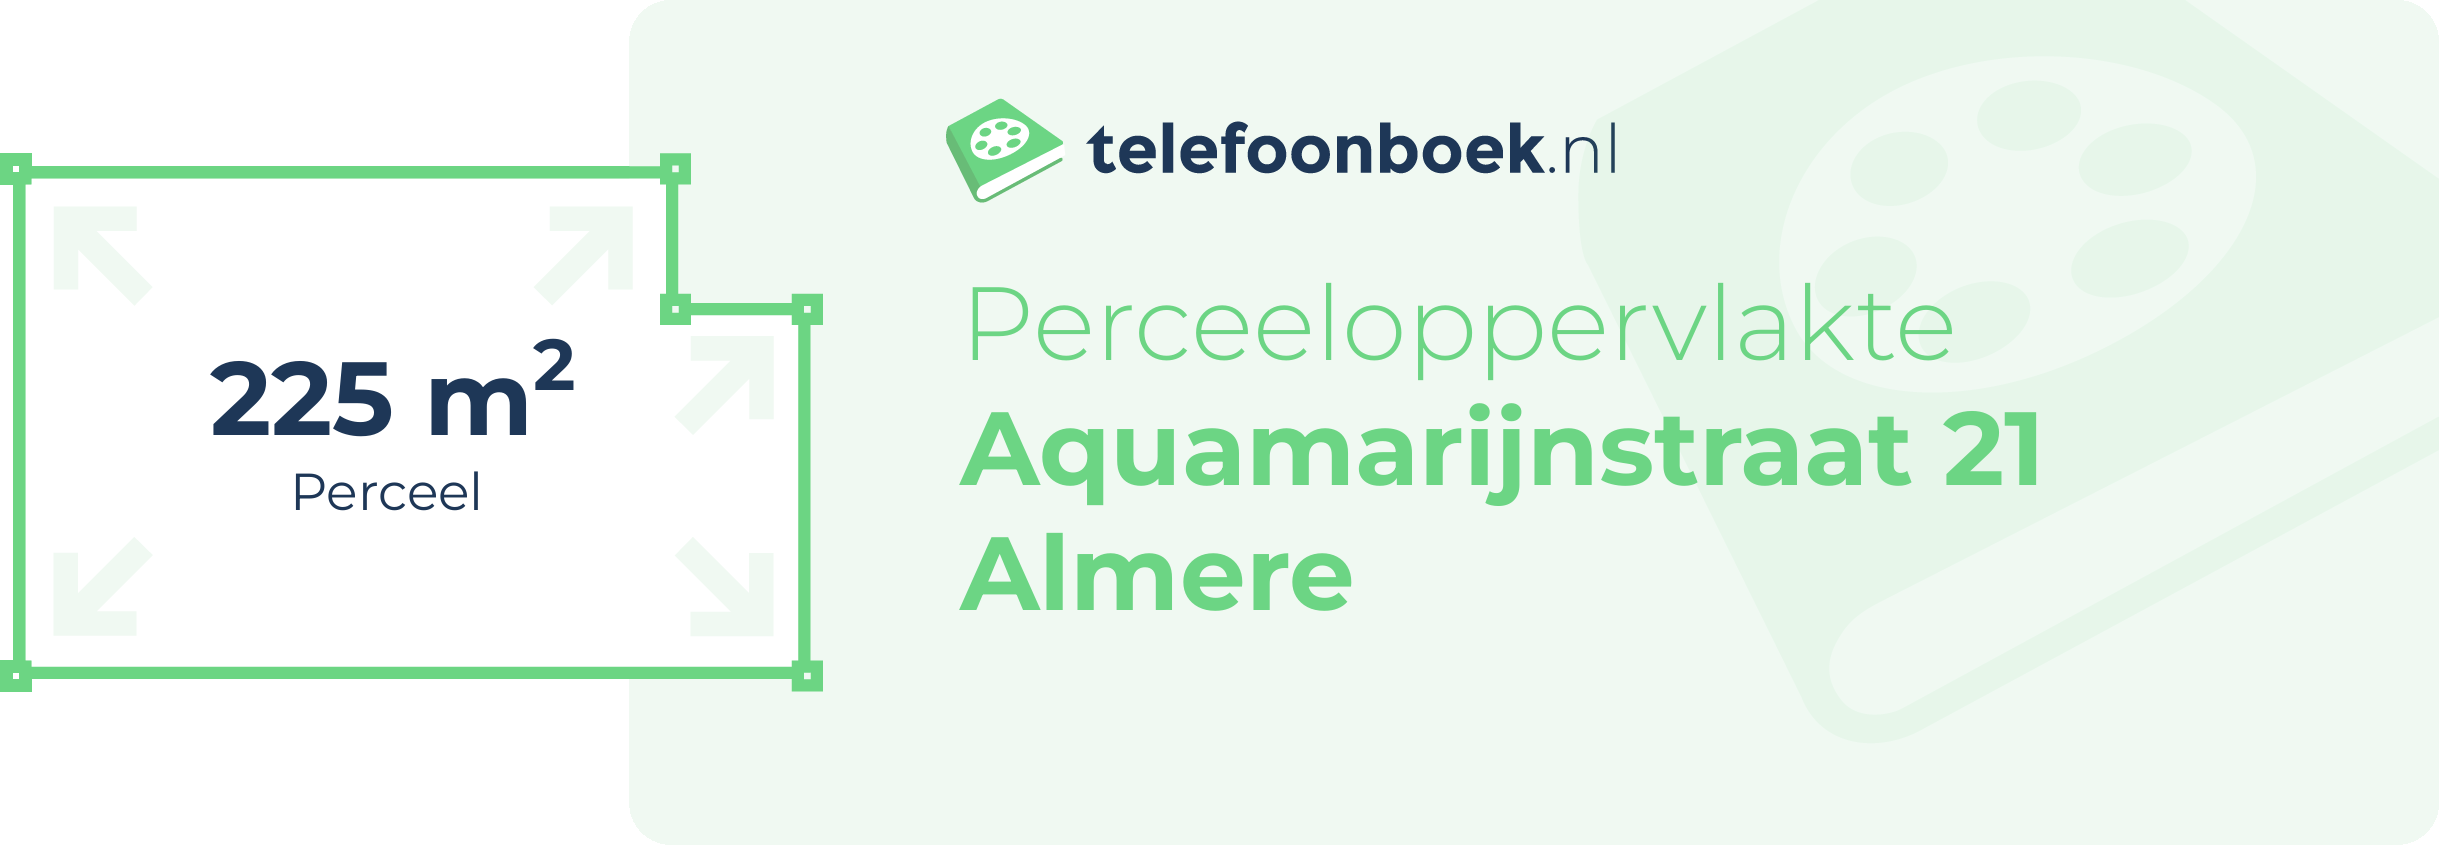 Perceeloppervlakte Aquamarijnstraat 21 Almere